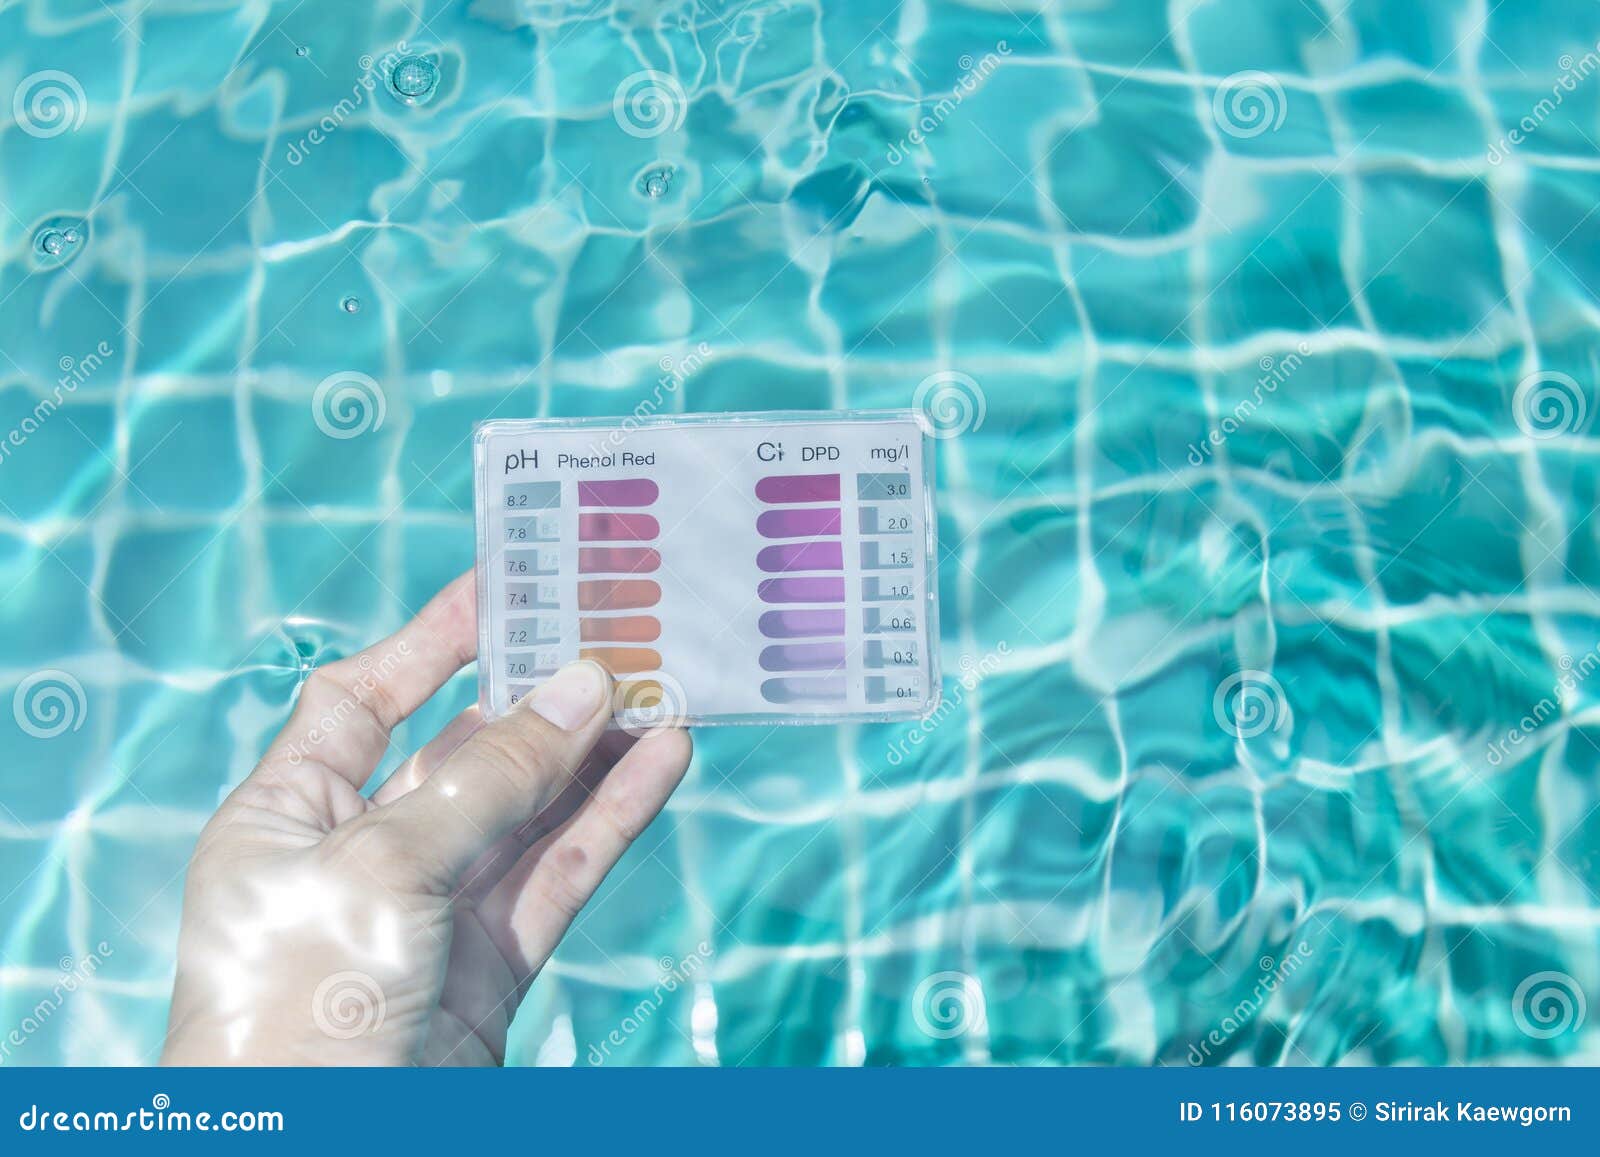 Норма хлора в воде. Проба воды в бассейне. Измерение хлора в бассейне. Контроль качества воды в бассейне. PH воды в бассейне.